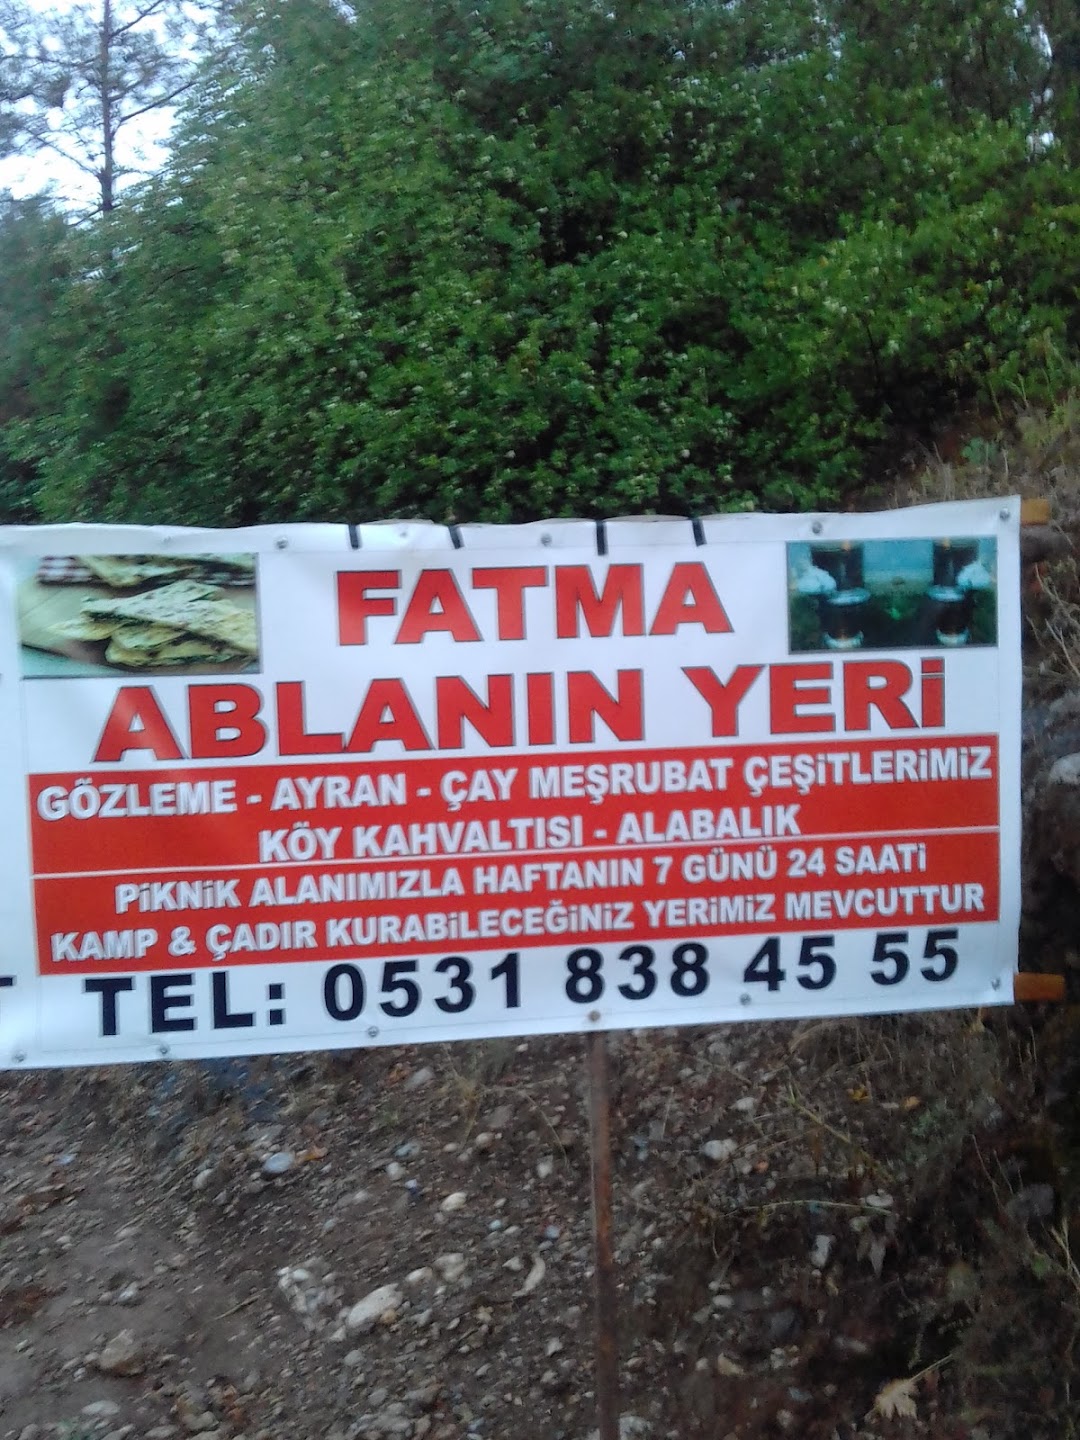 Fatma Ablanin Gozleme Yeri